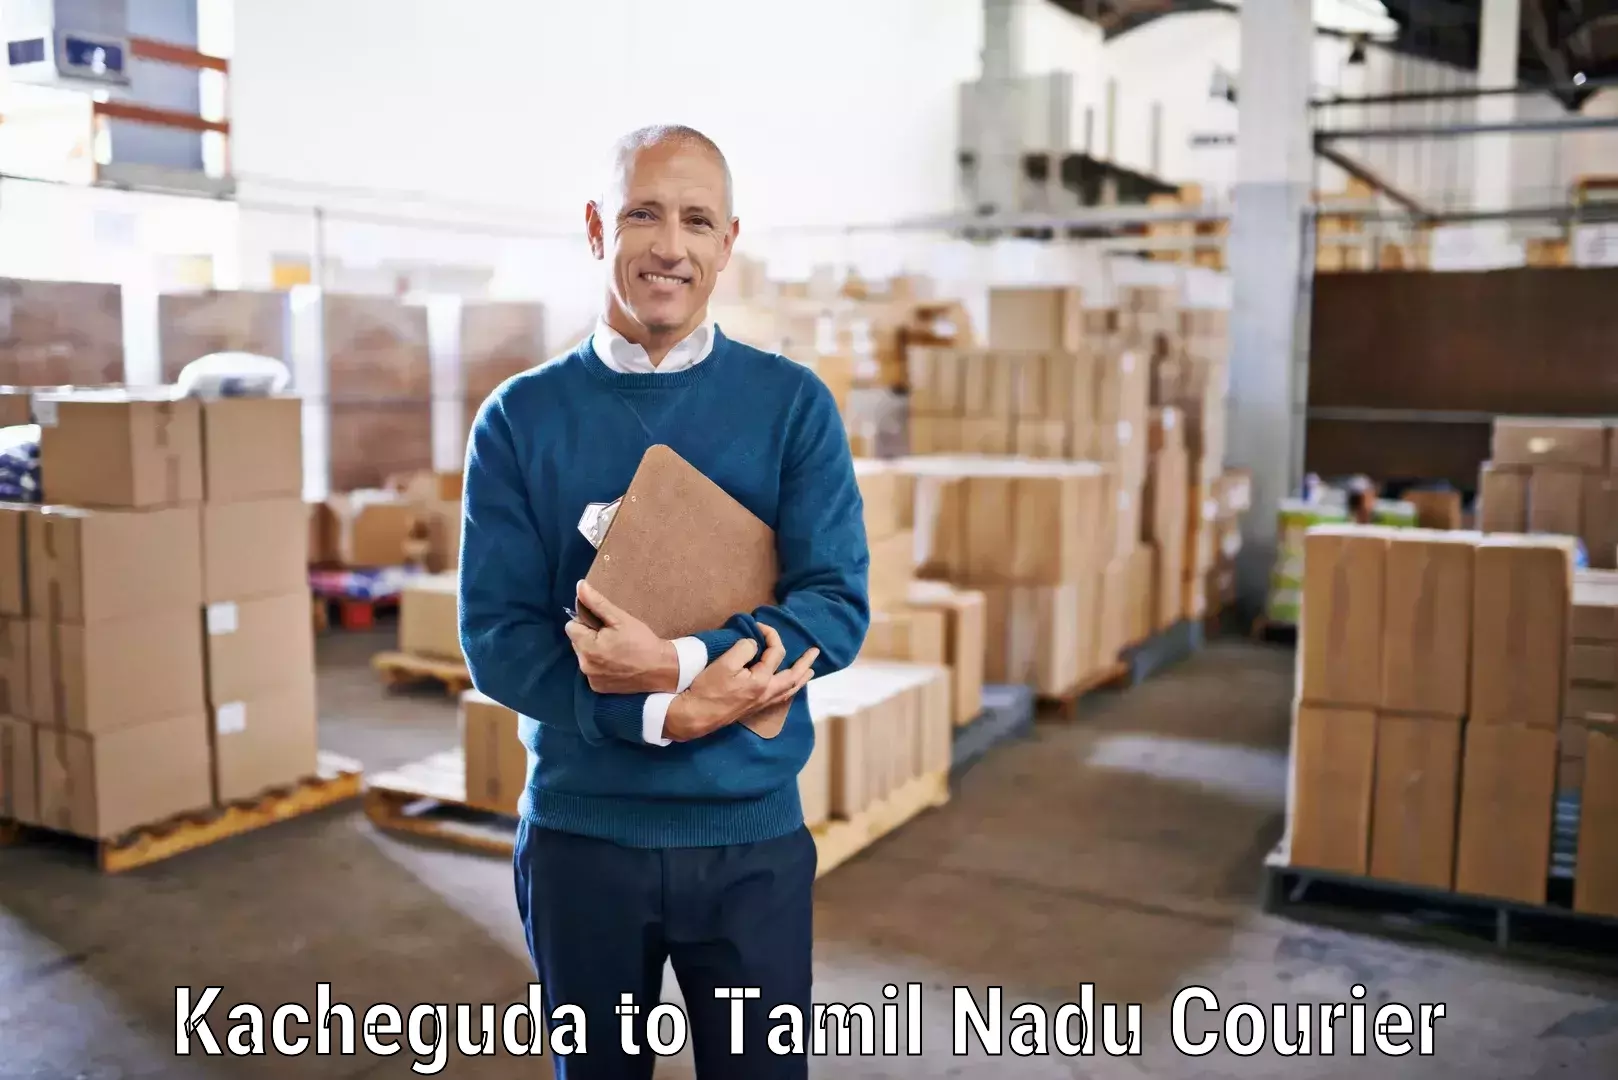 Express delivery network Kacheguda to IIIT Tiruchirappalli